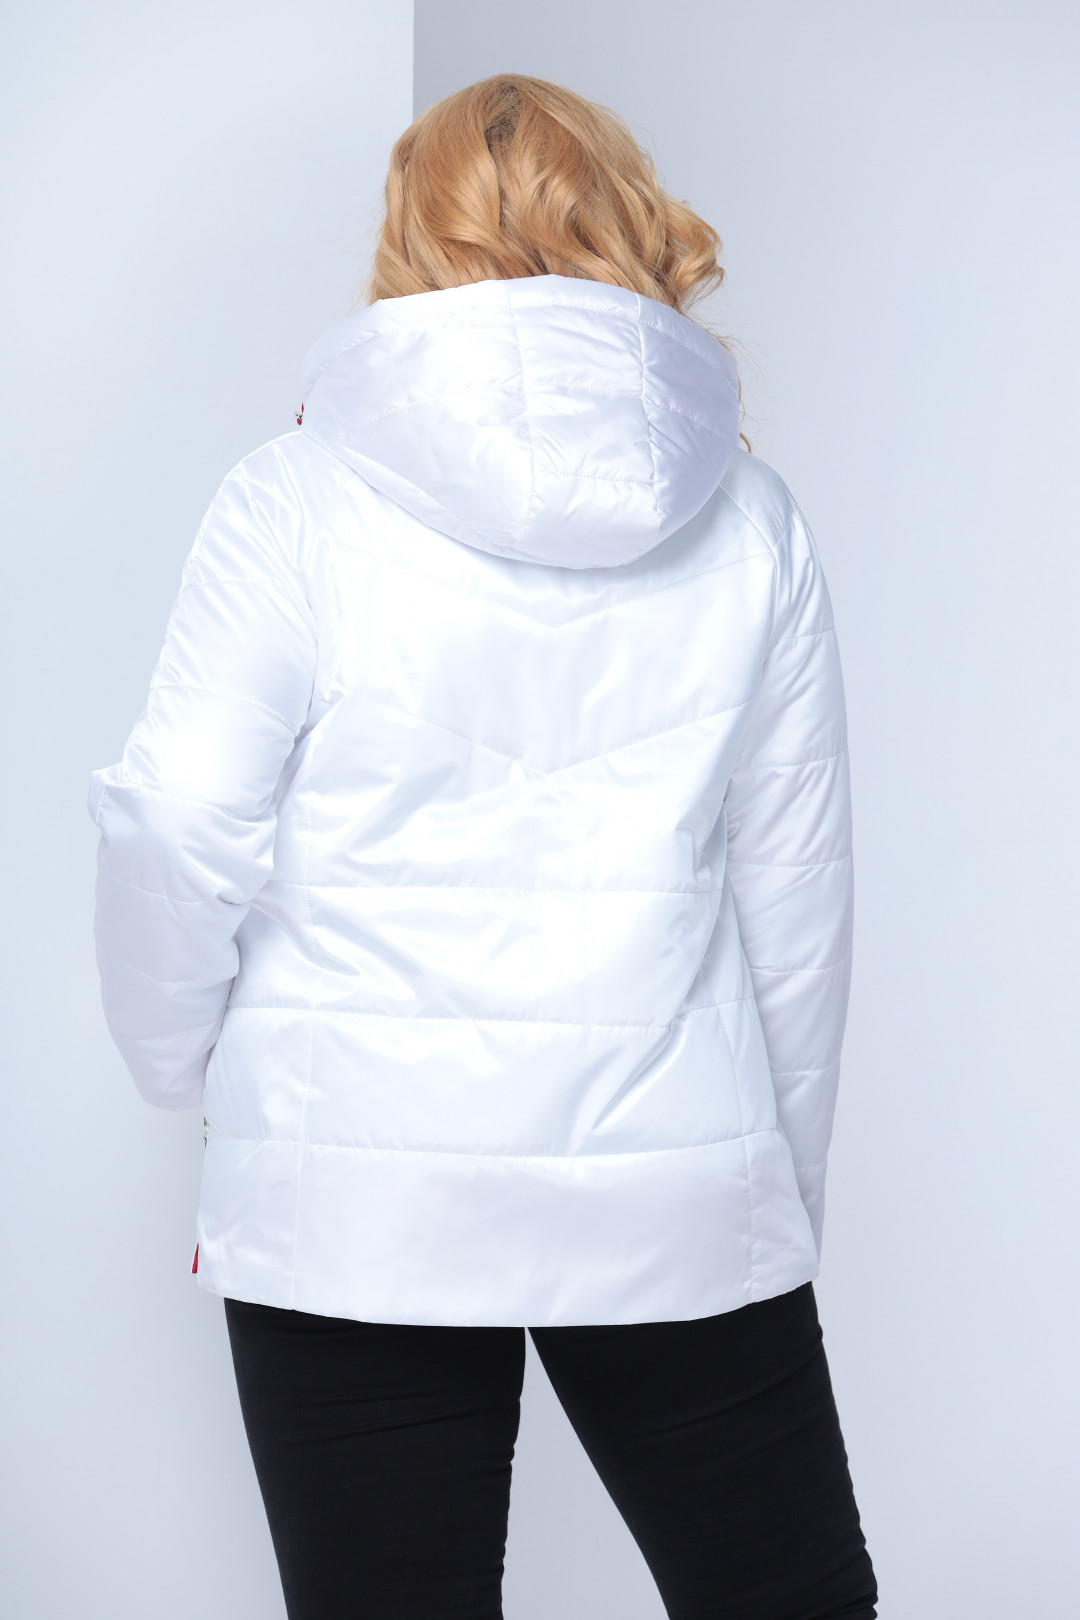 Куртка Shetti 2057 белый бол. размер